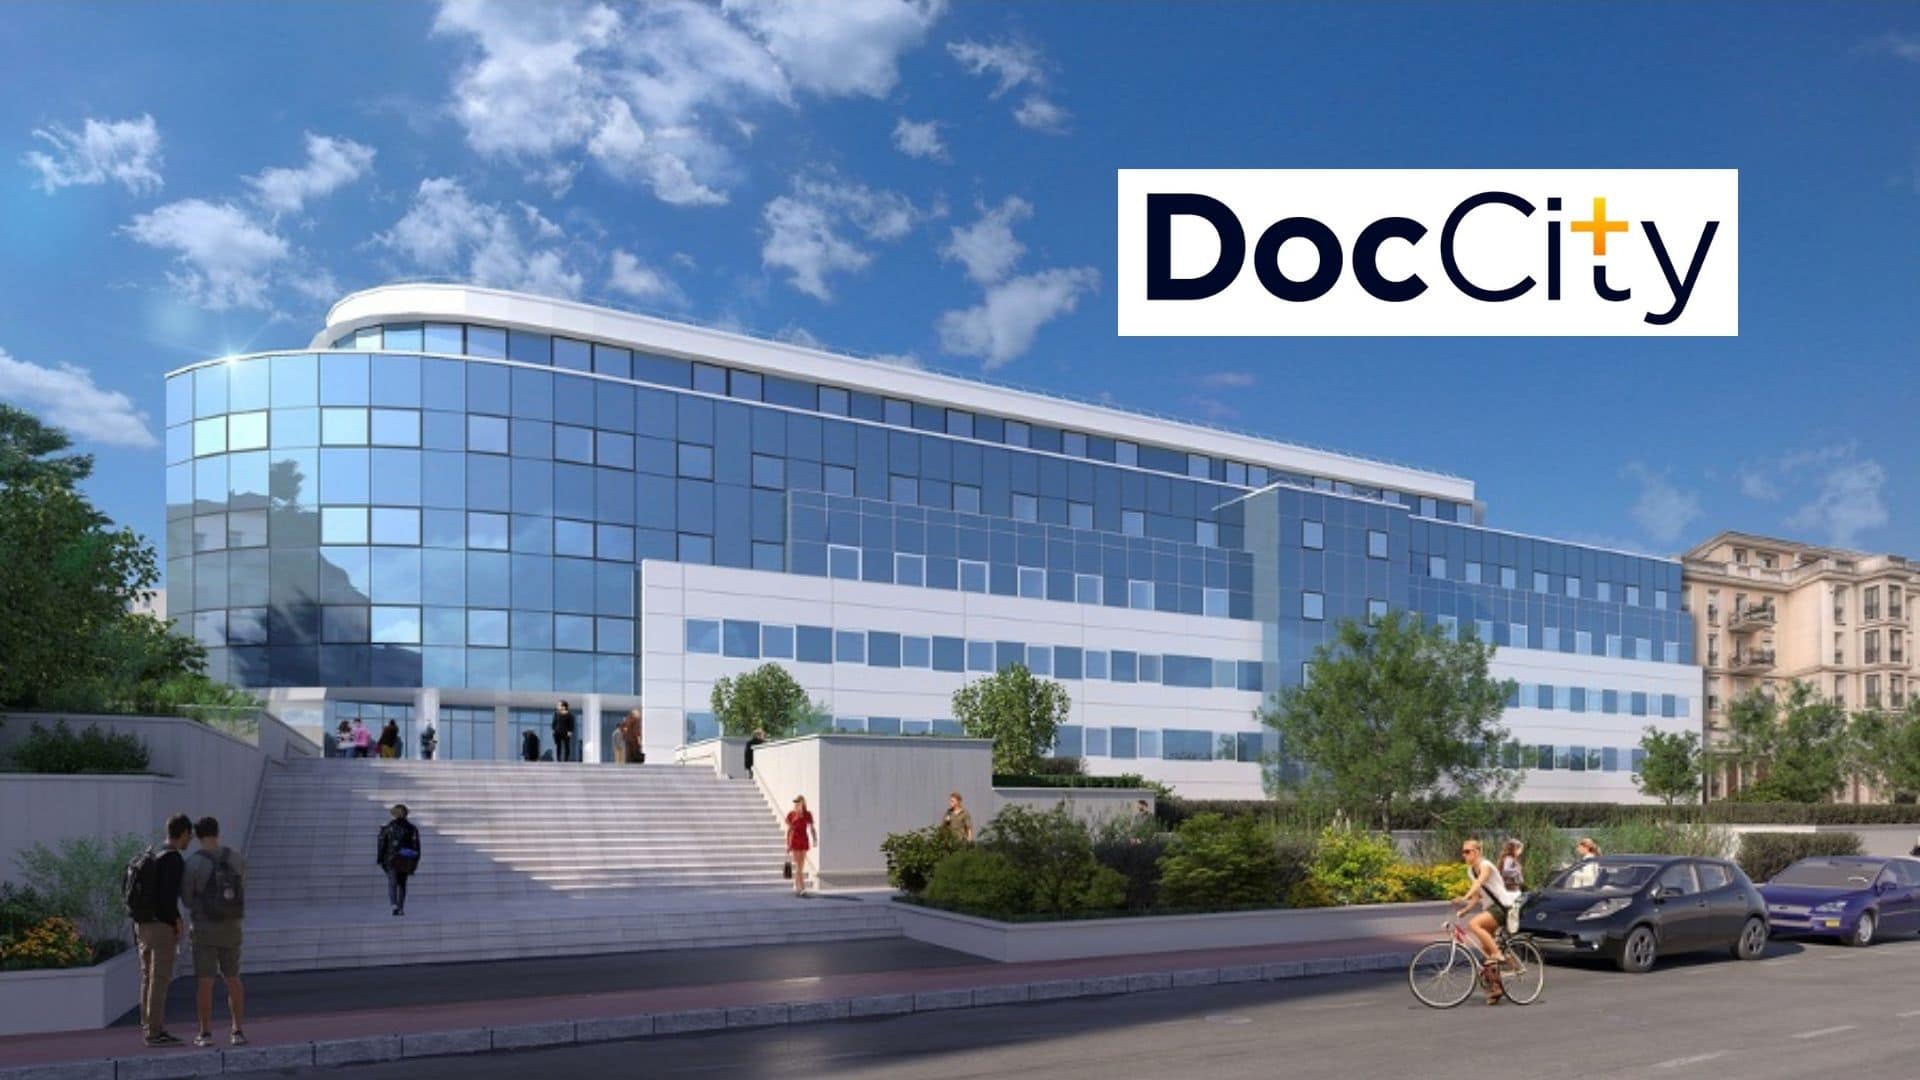 La startup DocCity poursuit son déploiement rapide dans 7 villes en France après avoir investi 100 M€ en deux ans.